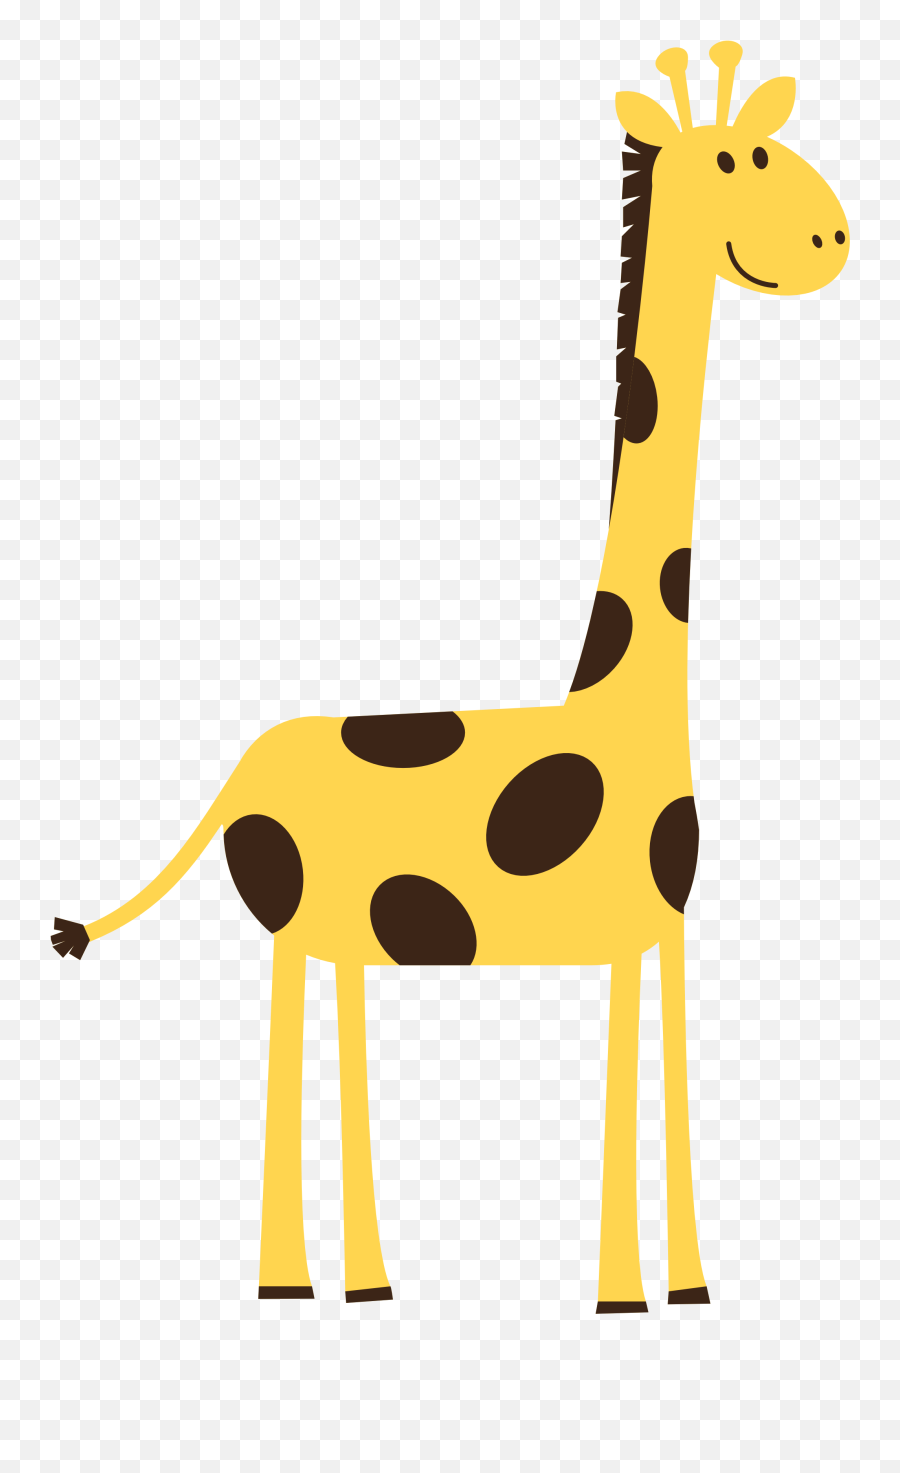 Free Transparent Giraffe Download - Giraffe Clip Art Png,Giraffe Transparent Background